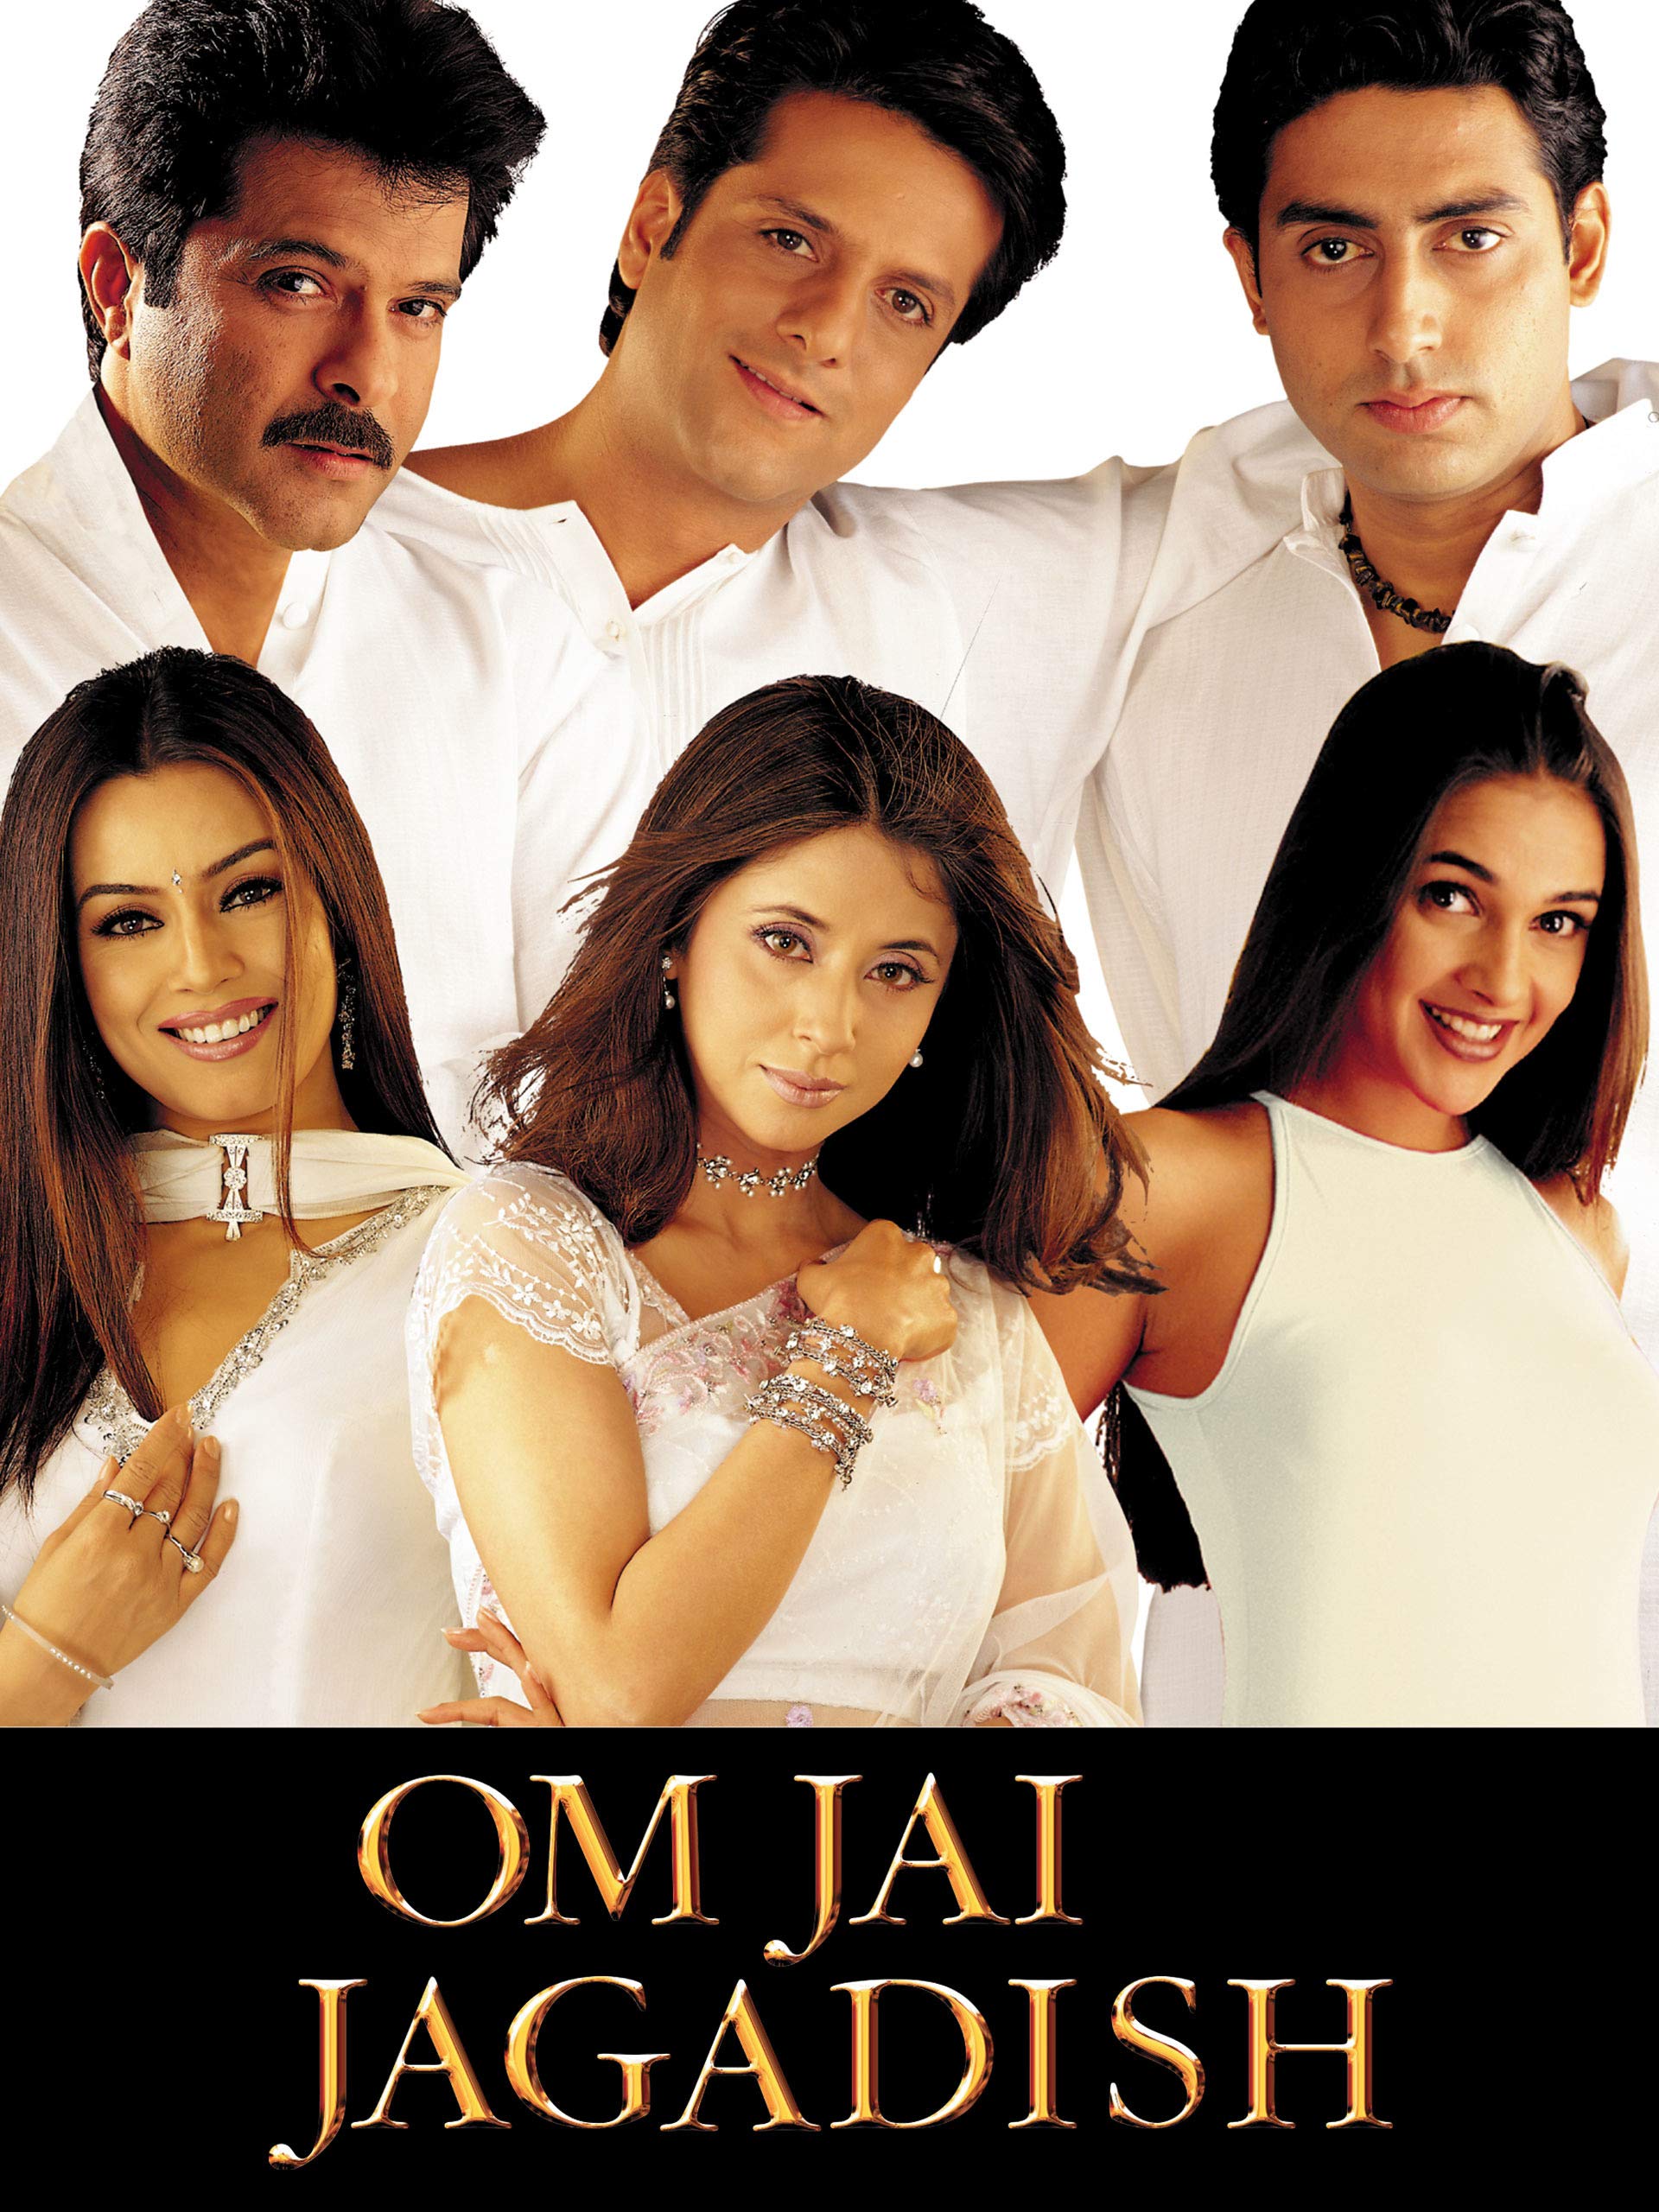 Om Jai Jagdish Xxx Video - Om Jai Jagadish Review 2/5 | Om Jai Jagadish Movie Review | Om Jai Jagadish  2002 Public Review | Film Review